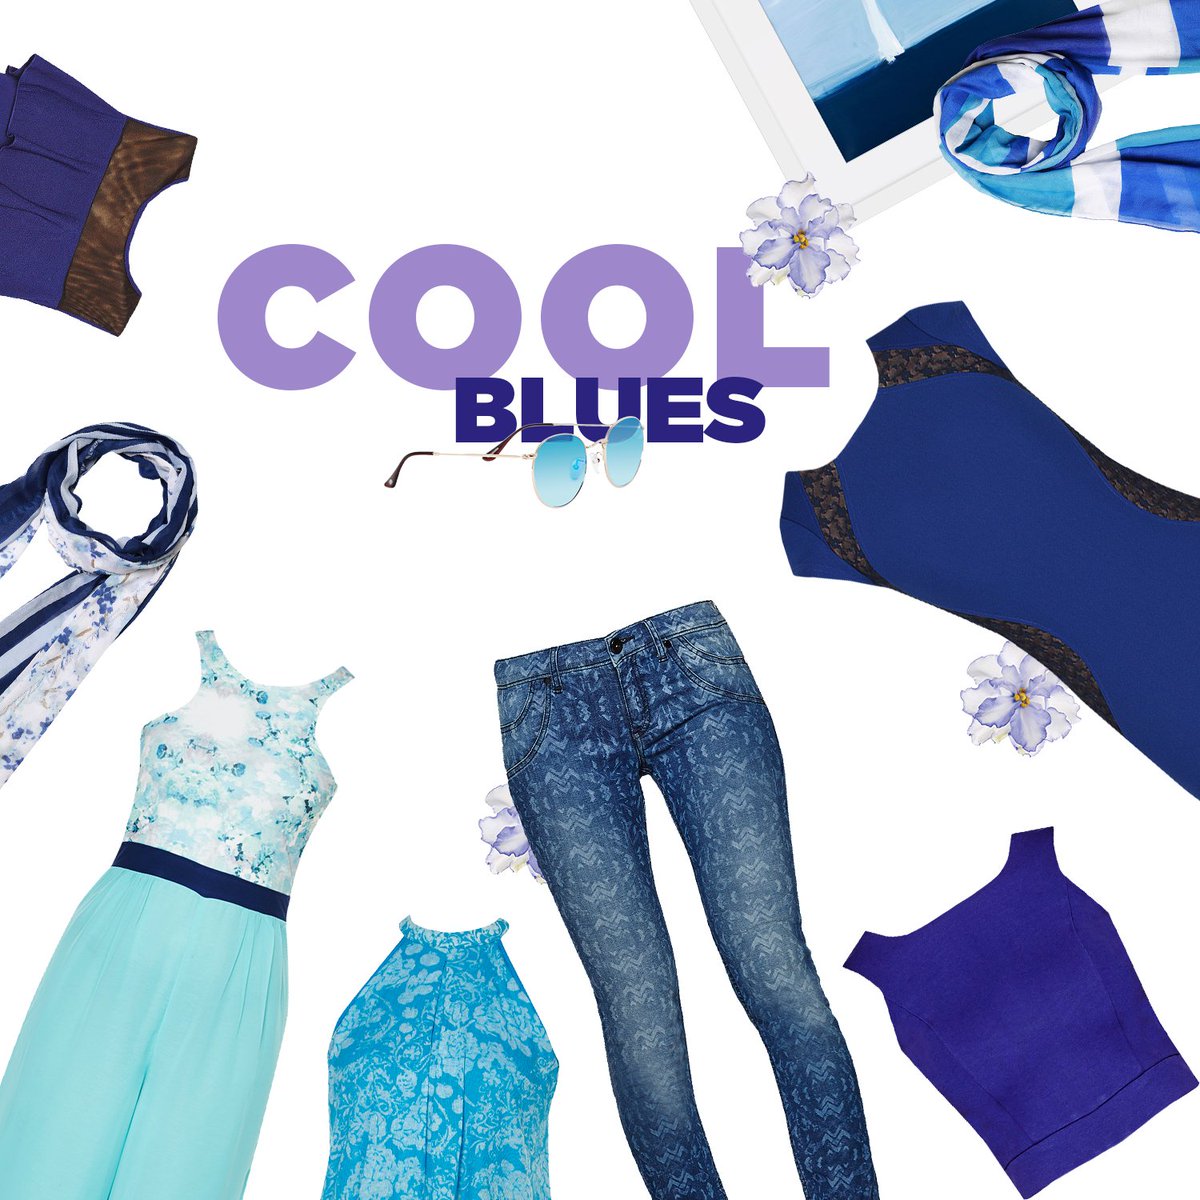 Best of blues! #FashionFinds  #ShadesofBlue #StyleFile #WardrobeMustHave #InstaFashion #InstaCool #IntoTheBlue